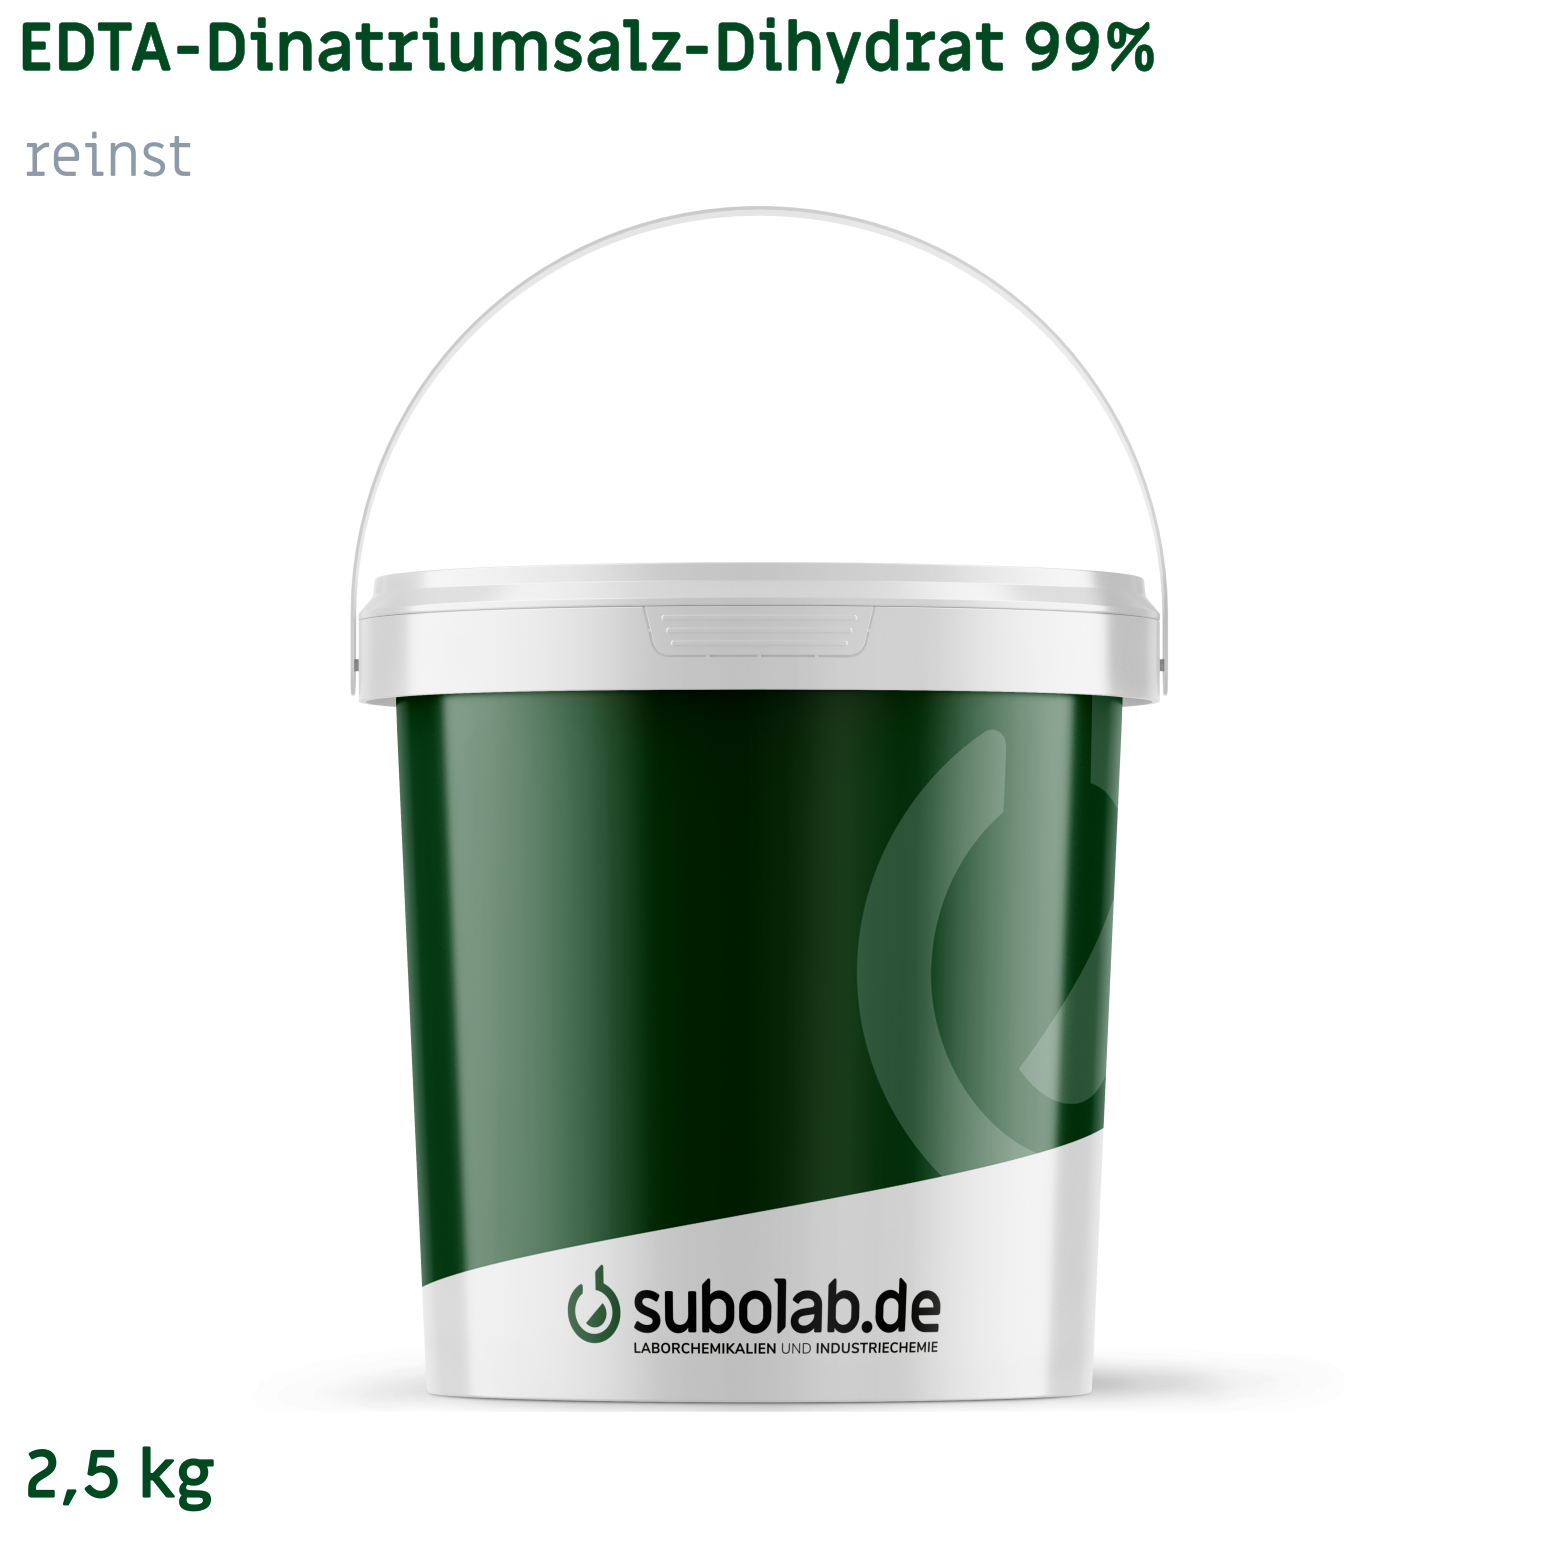 Bild von EDTA - Dinatriumsalz - Dihydrat 99% reinst (2,5 kg)